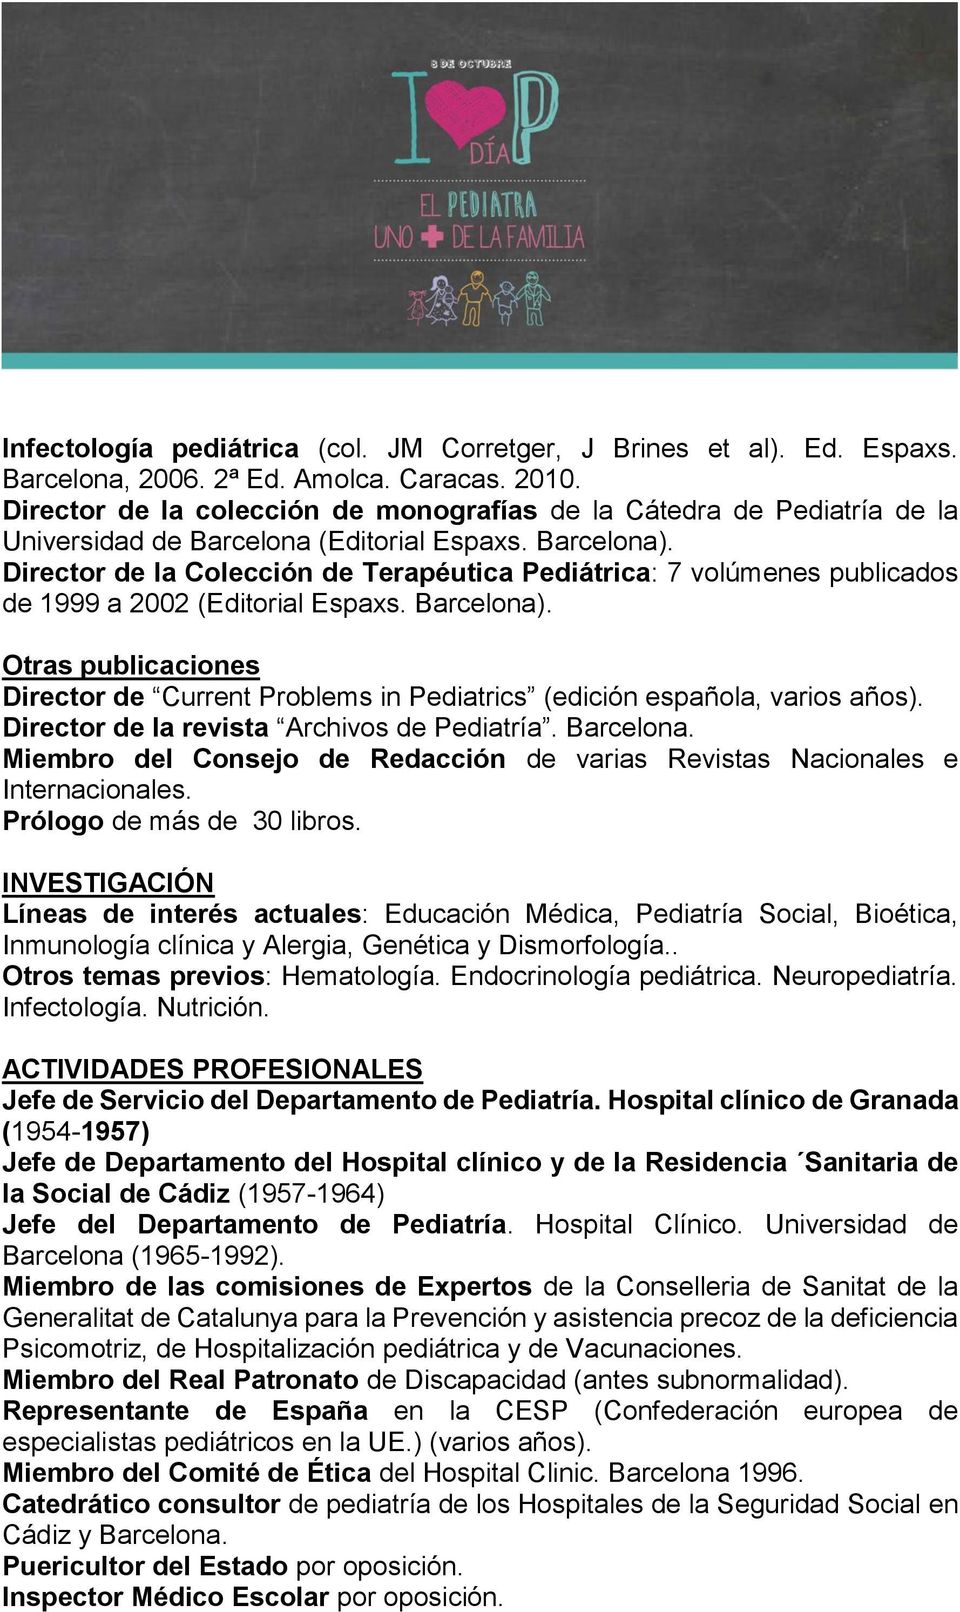 Director de la Colección de Terapéutica Pediátrica: 7 volúmenes publicados de 1999 a 2002 (Editorial Espaxs. Barcelona).